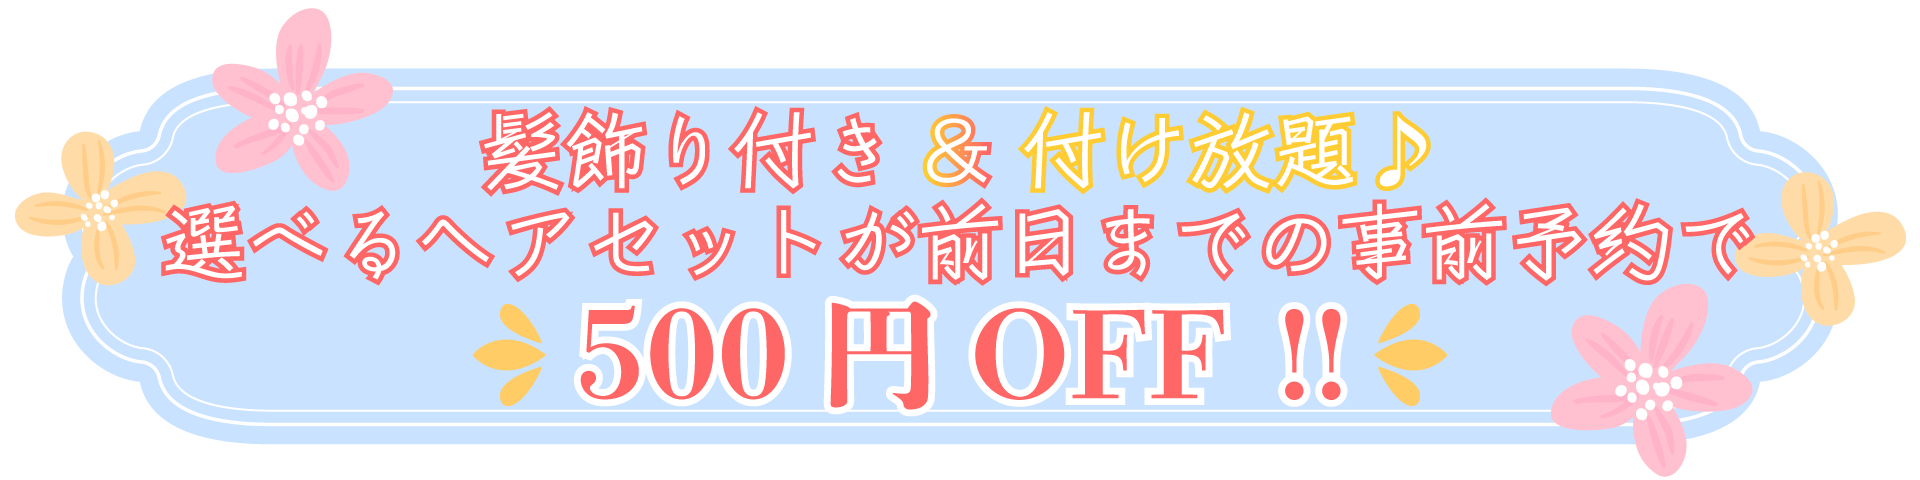 えらべるヘアセットが前日までの事前予約で500円OFF!